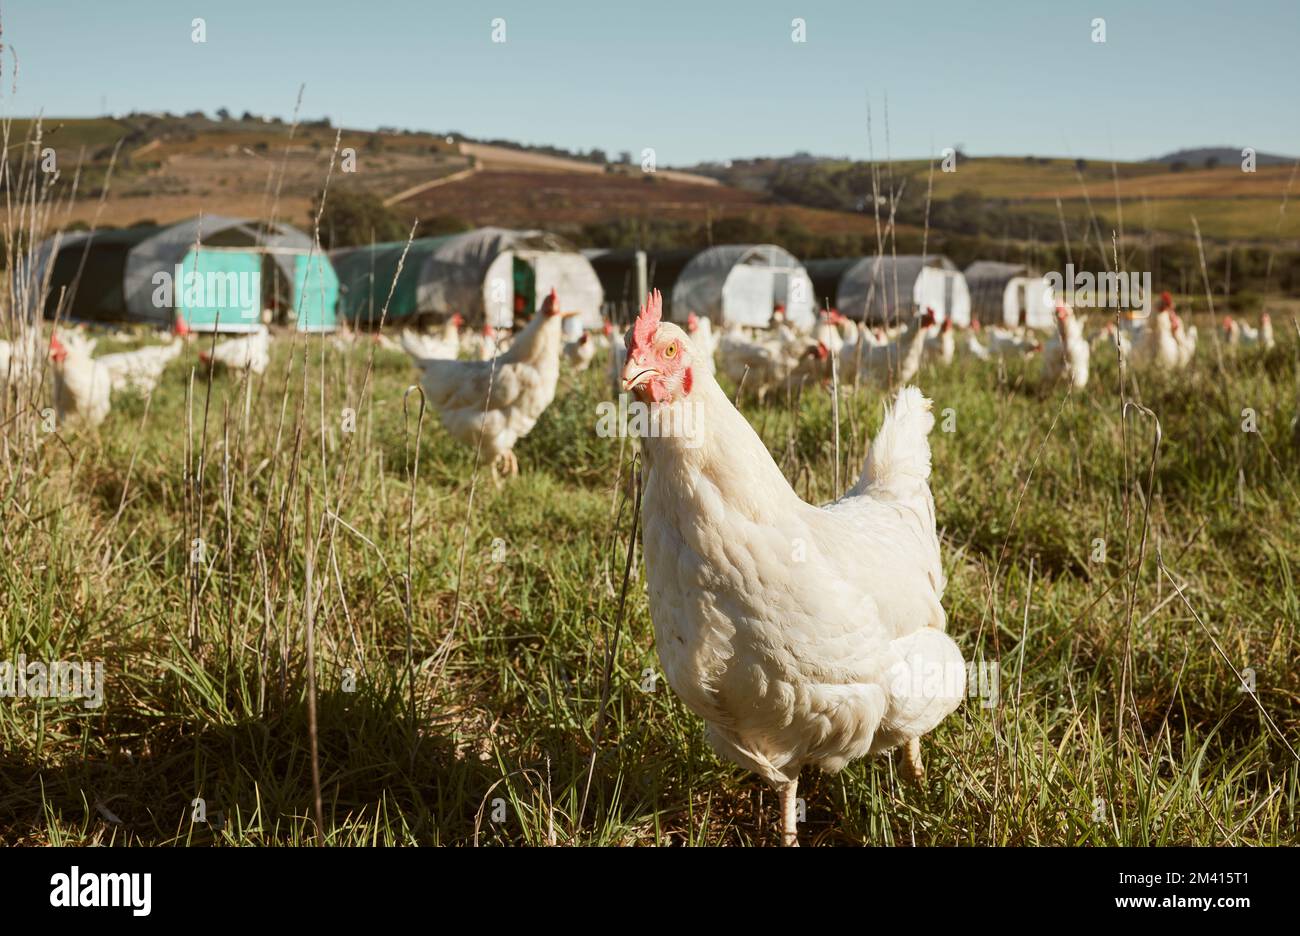 Landwirtschaft, Landwirtschaft und Hühnerzucht auf dem Land auf ökologischem, gesundem und natürlichem Eiweißzuchtbetrieb. Nachhaltigkeit, Naturlandschaft und Herde von Stockfoto